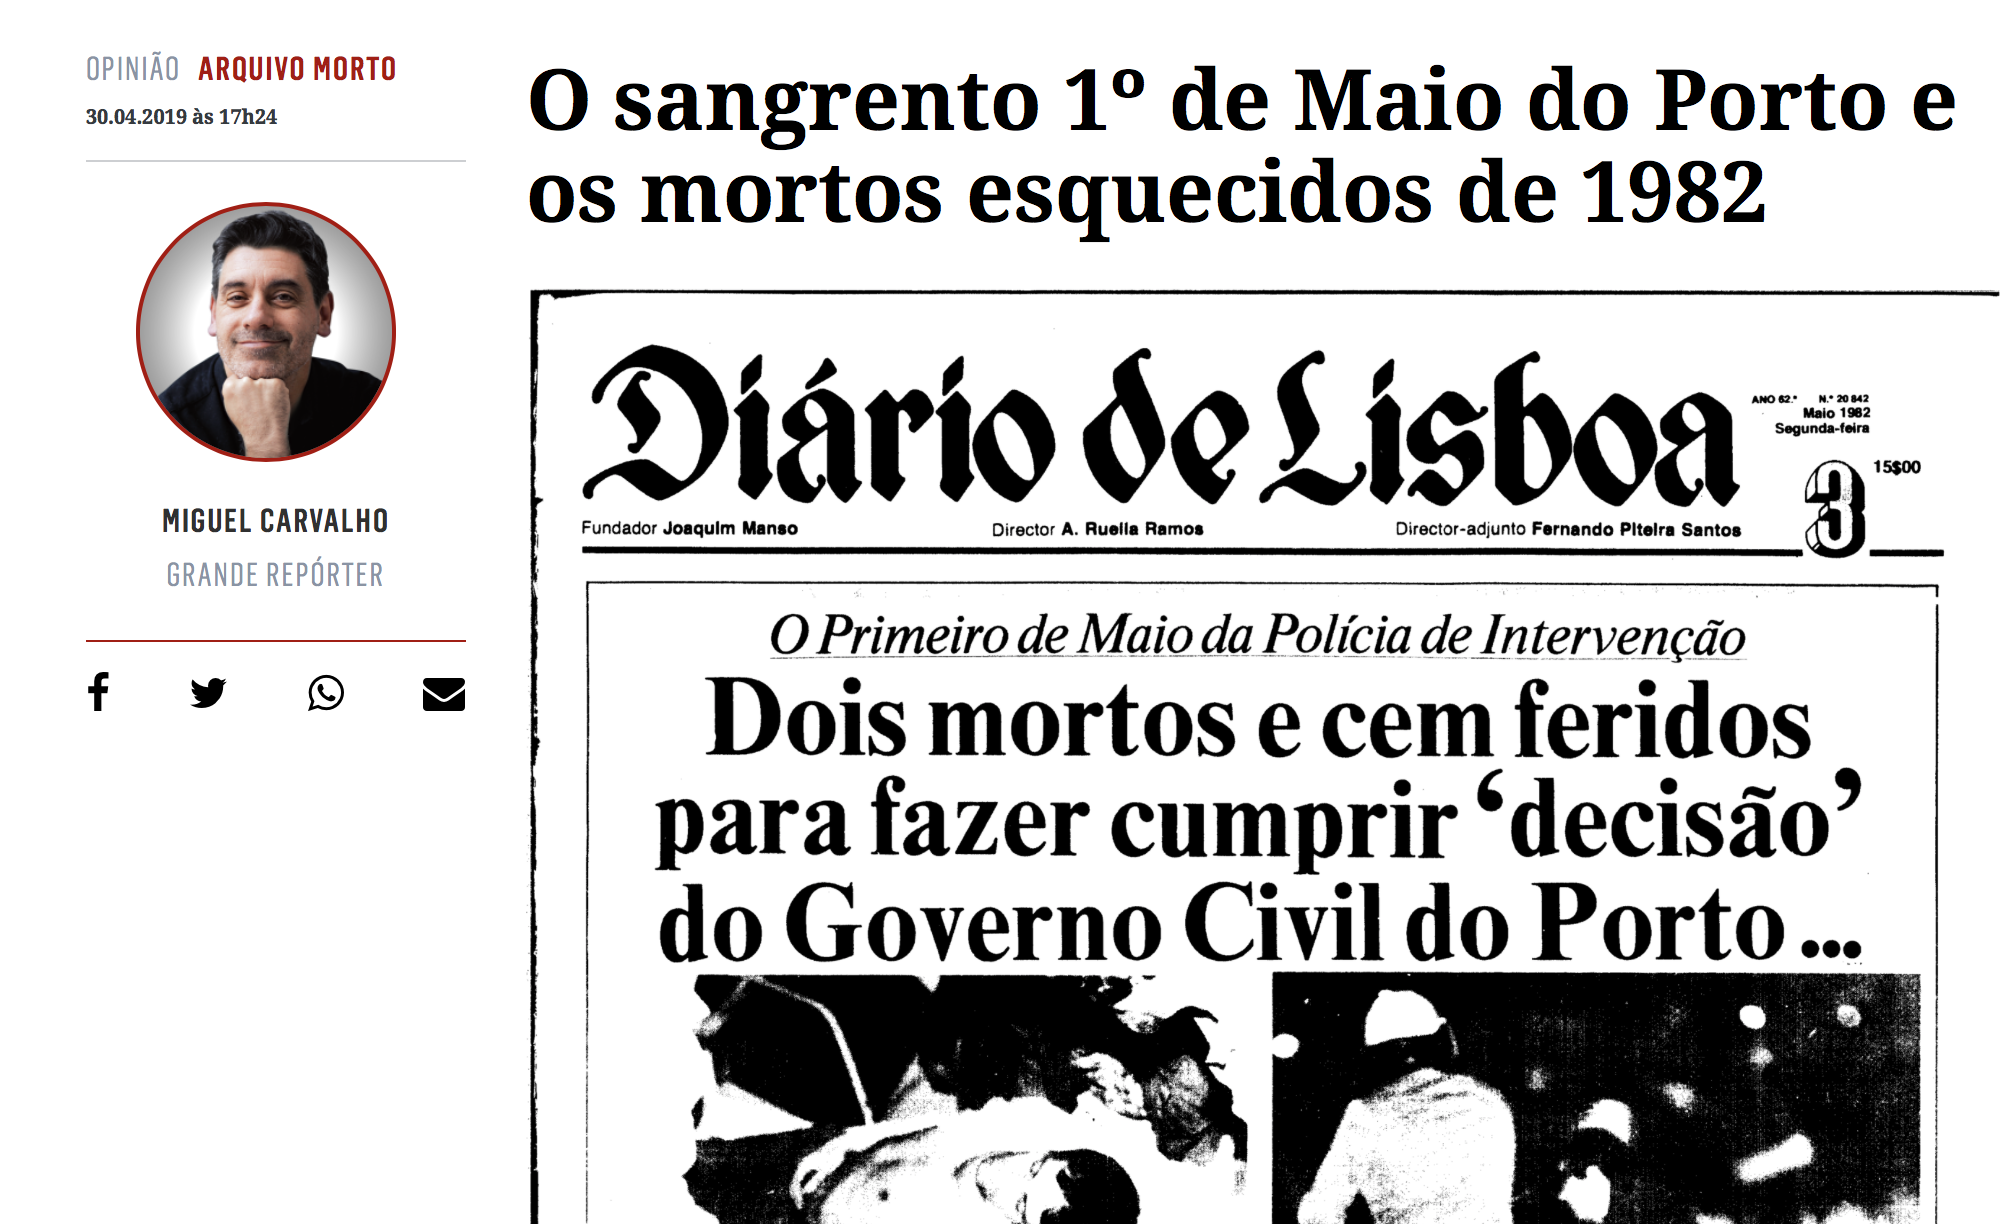 "O sangrento 1º de Maio do Porto e os mortos esquecidos de 1982"